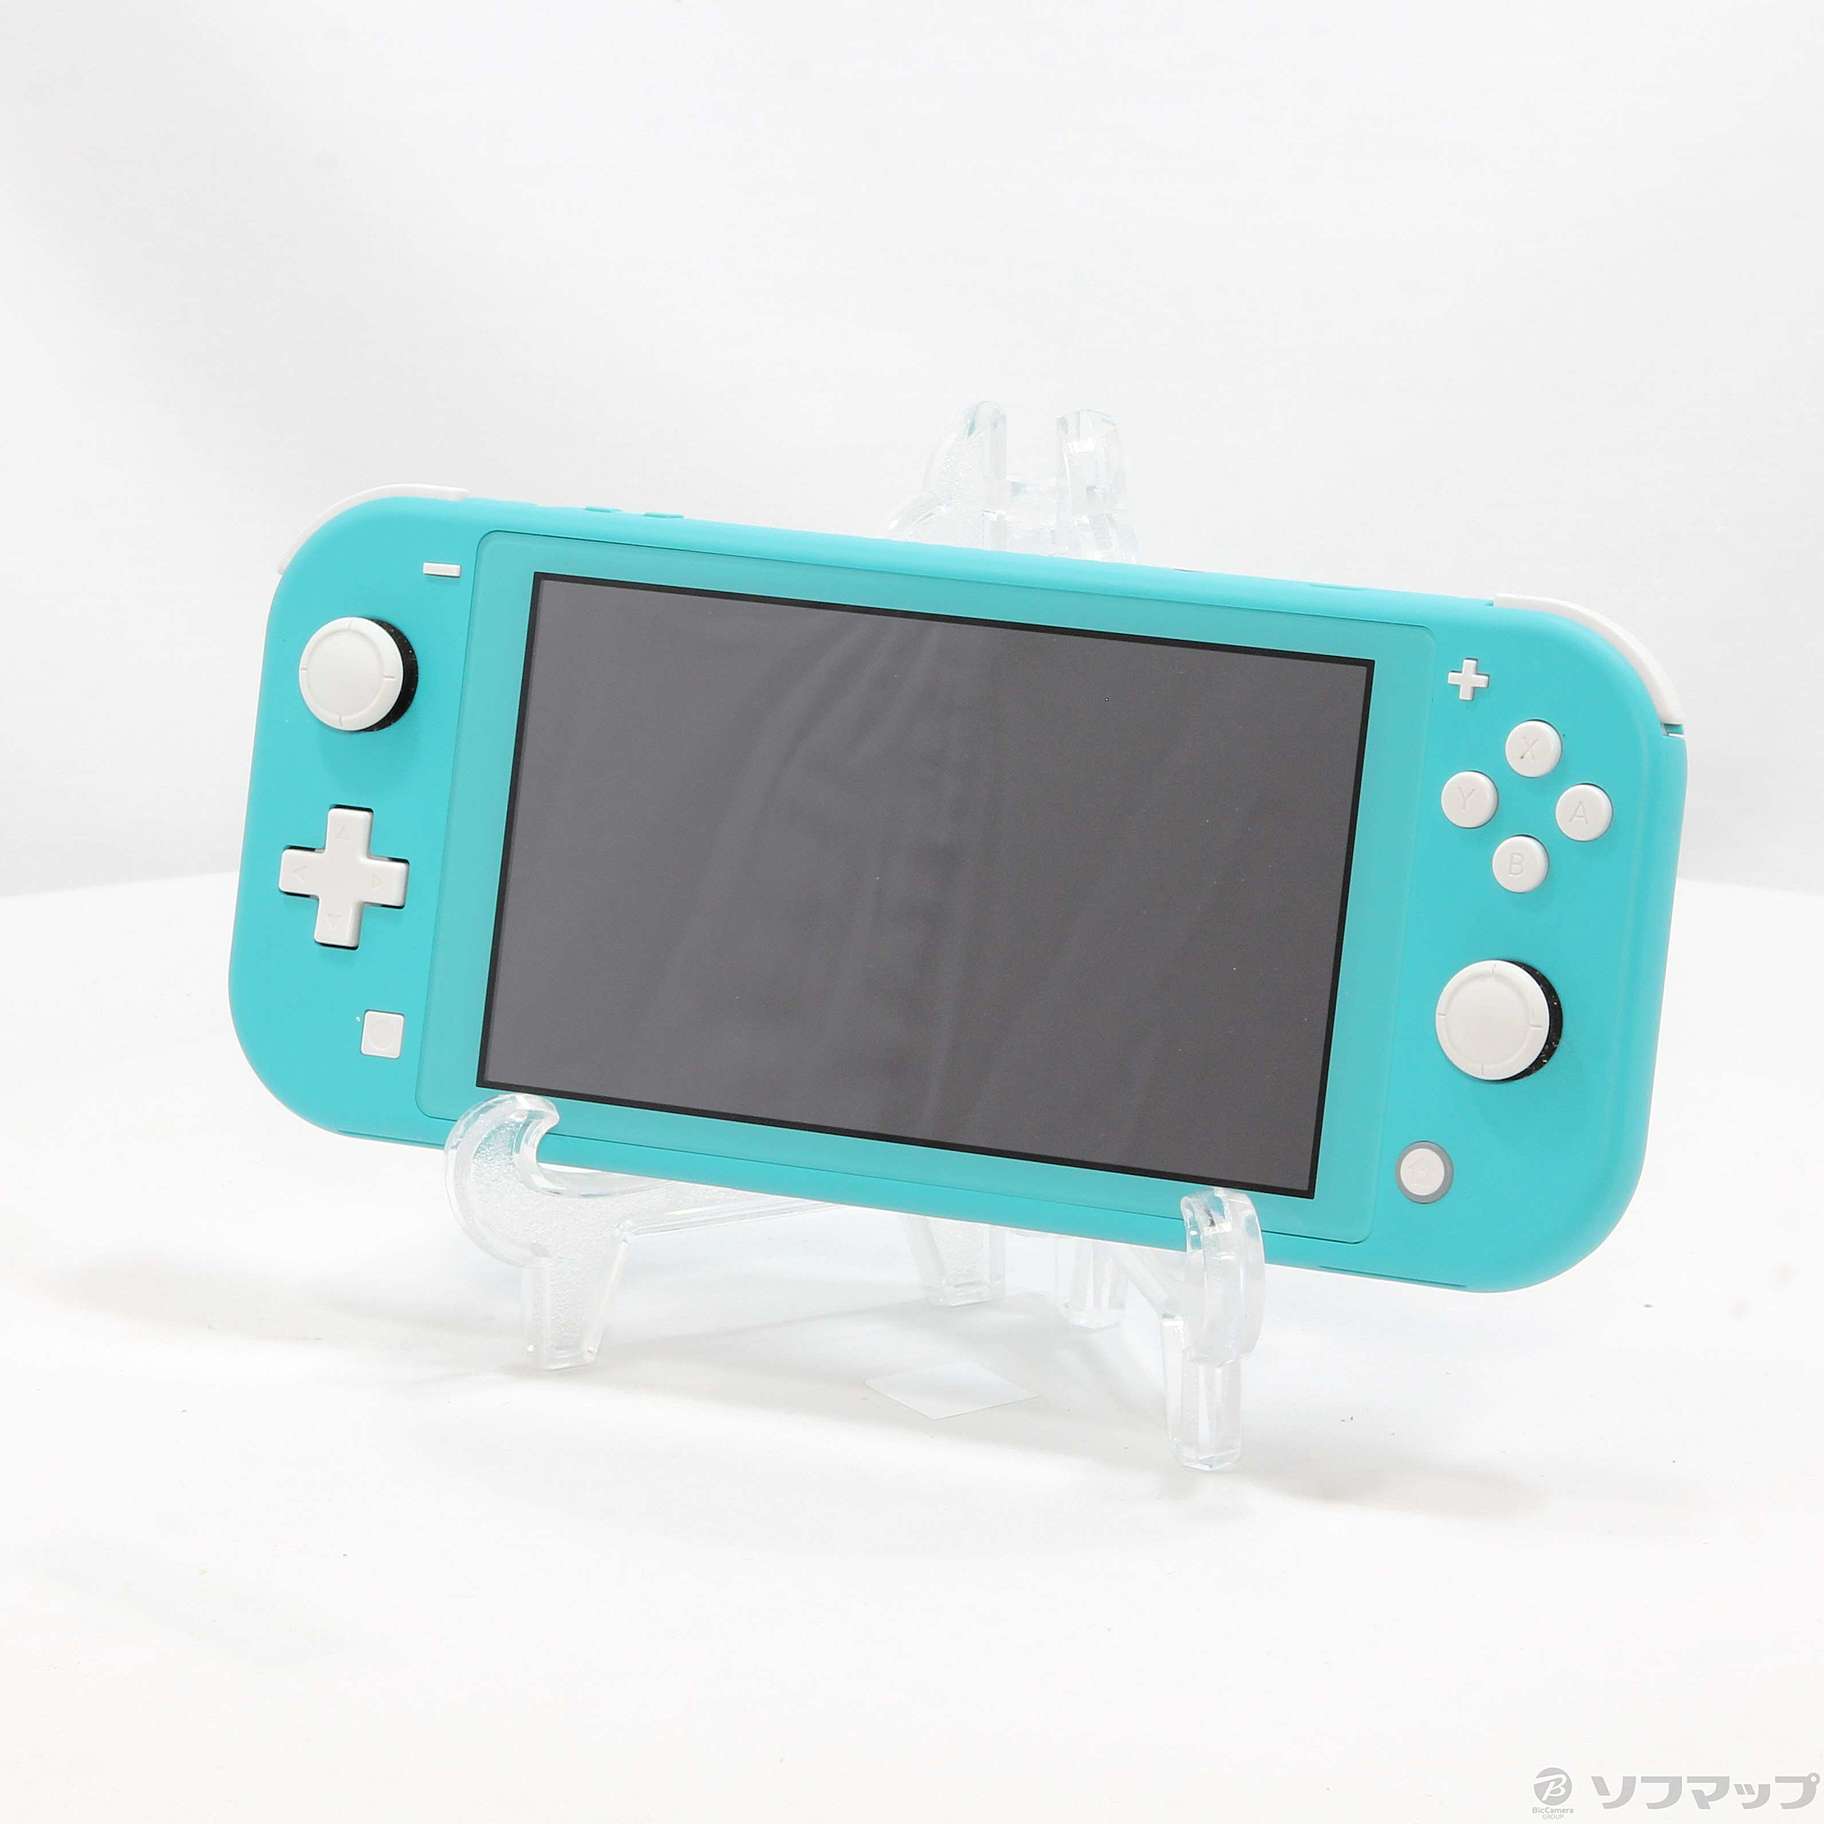 中古】セール対象品 Nintendo Switch Lite ターコイズ ◇07/15(金